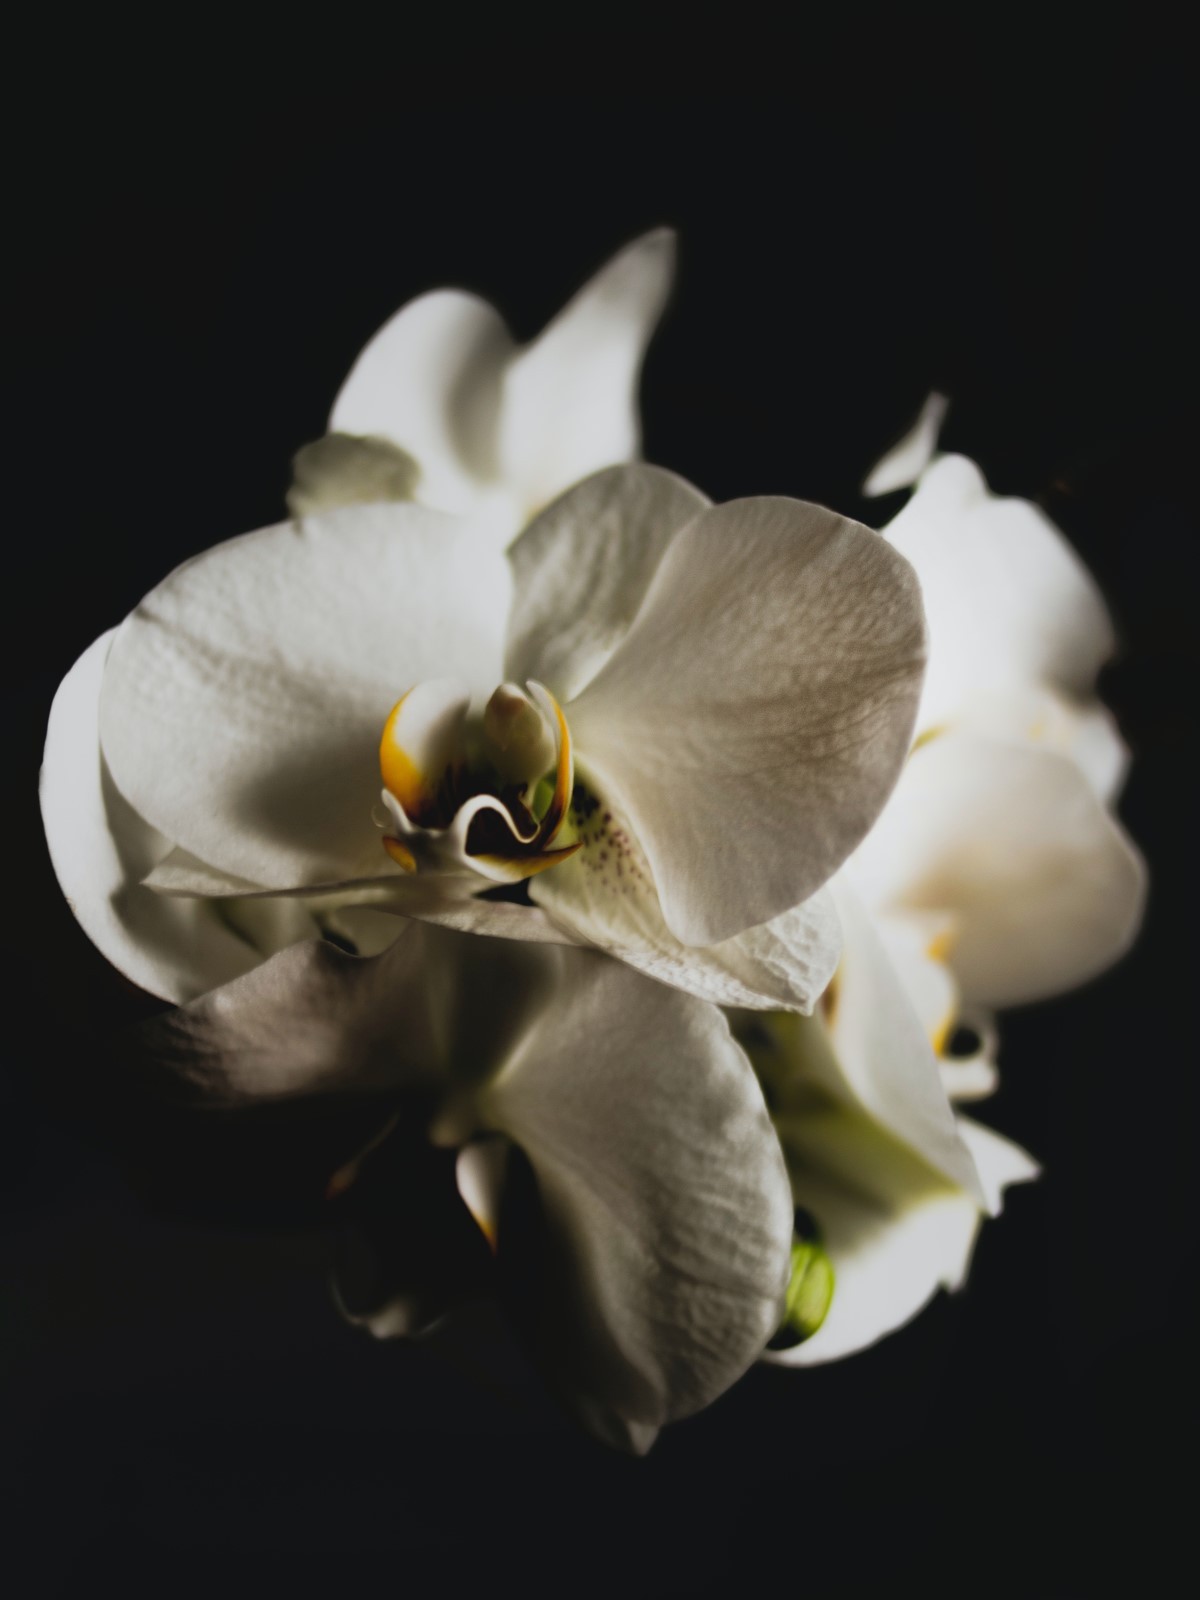 A baixa exposição à luz pode prejudicar o desenvolvimento das orquídeas, impedindo a inflorescência e tornando a planta mais suscetível a pragas e doenças (Foto: Pexels / Dominika Roseclay / CreativeCommons)